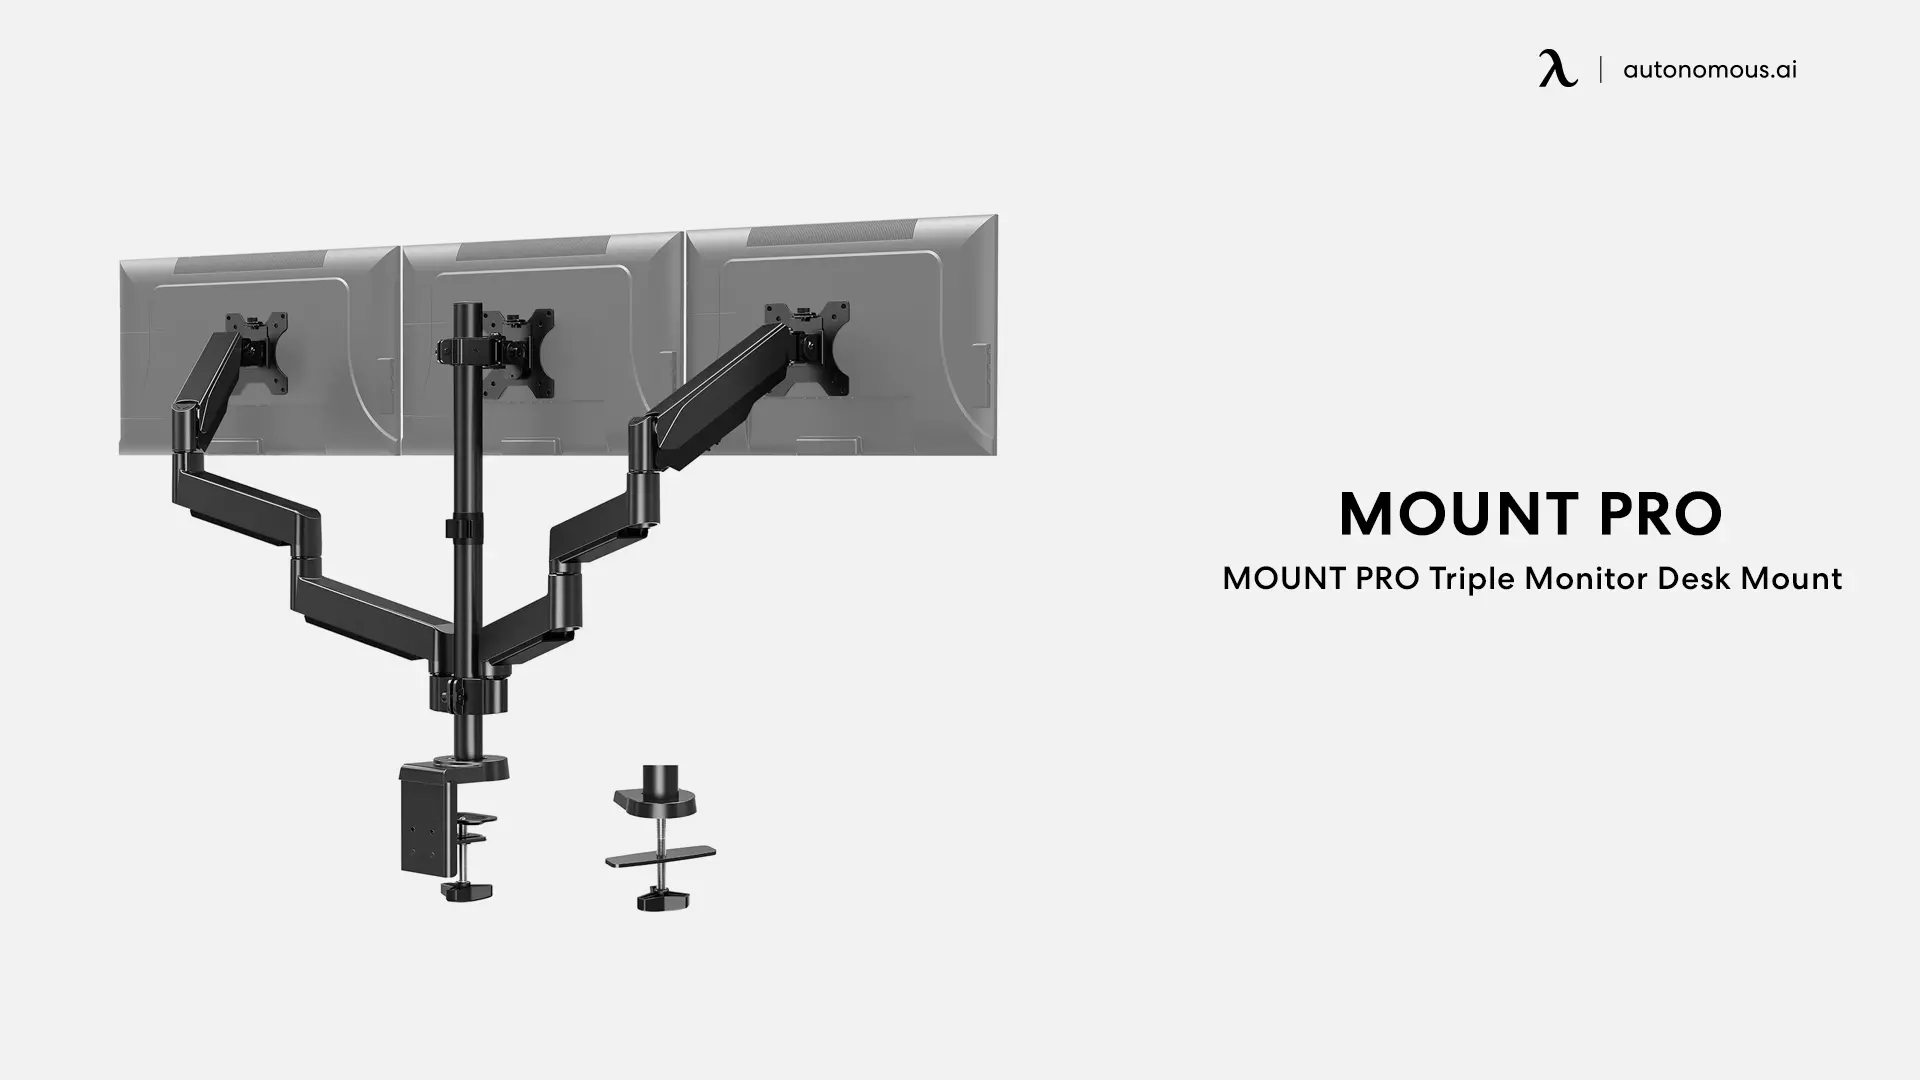 MOUNT PRO Triple Monitor Desk Mount